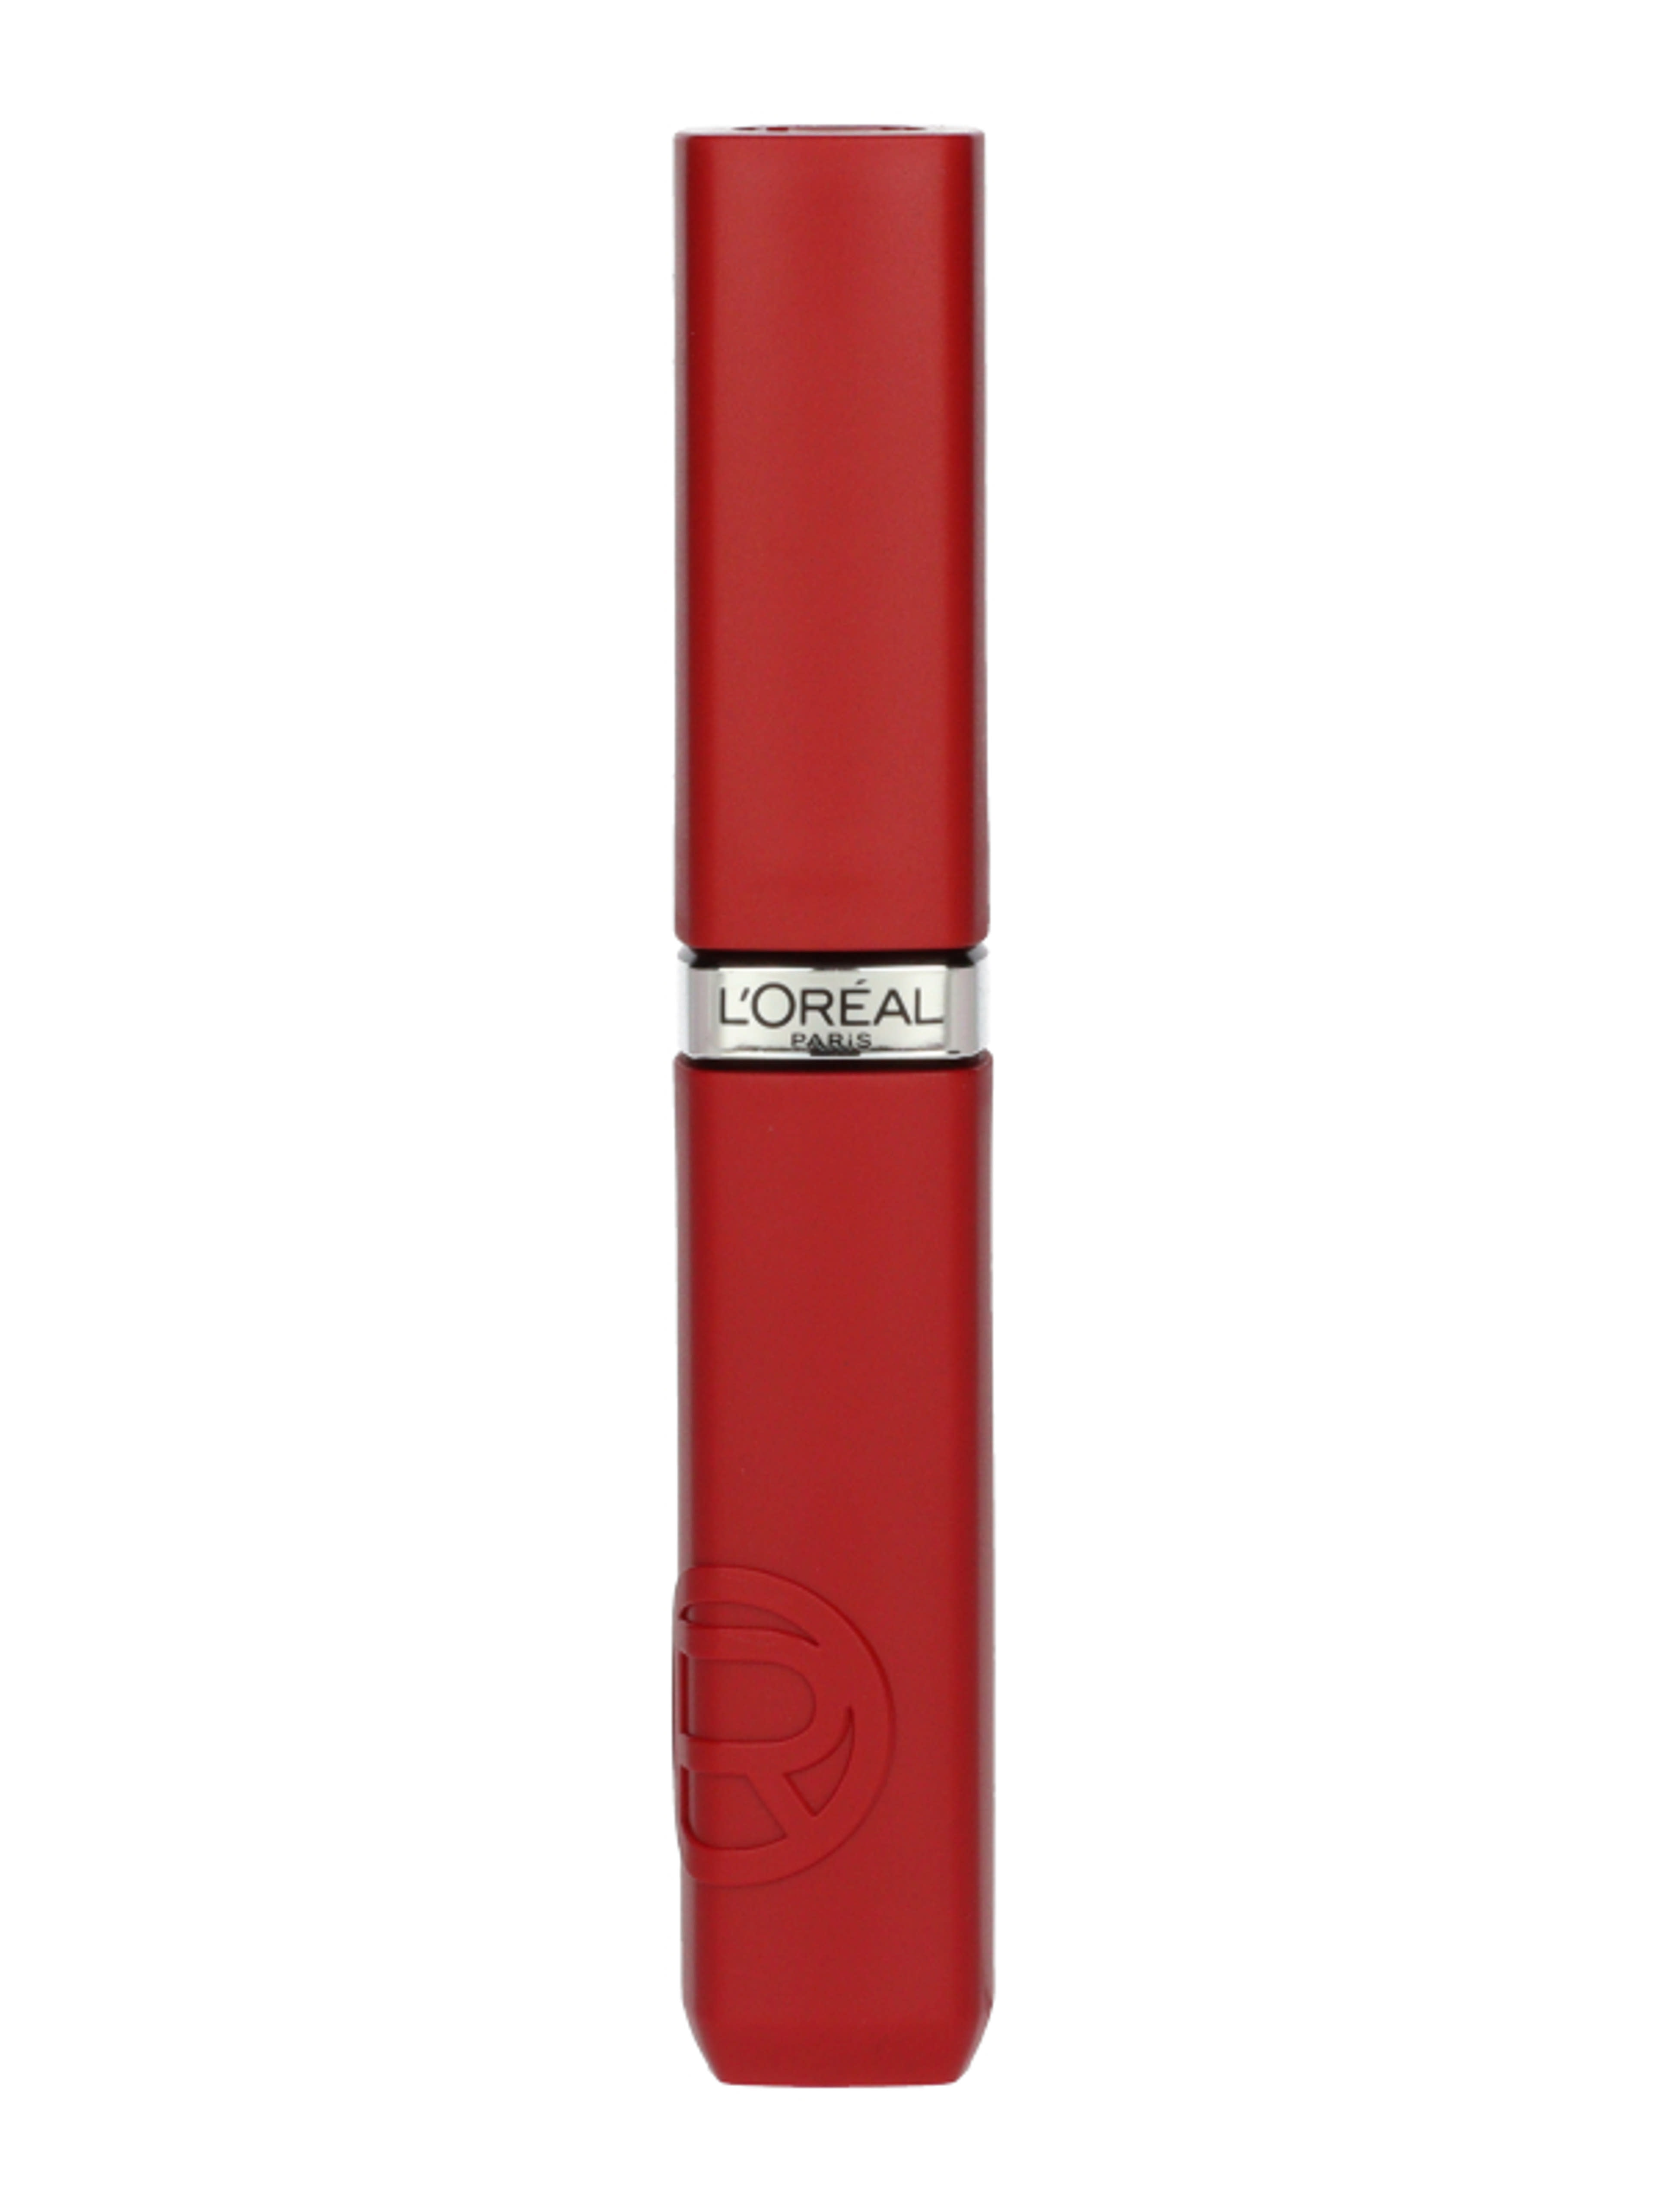 L'Oréal Paris Infaillible Matte Resistance rúzs /420 - 1 db-2